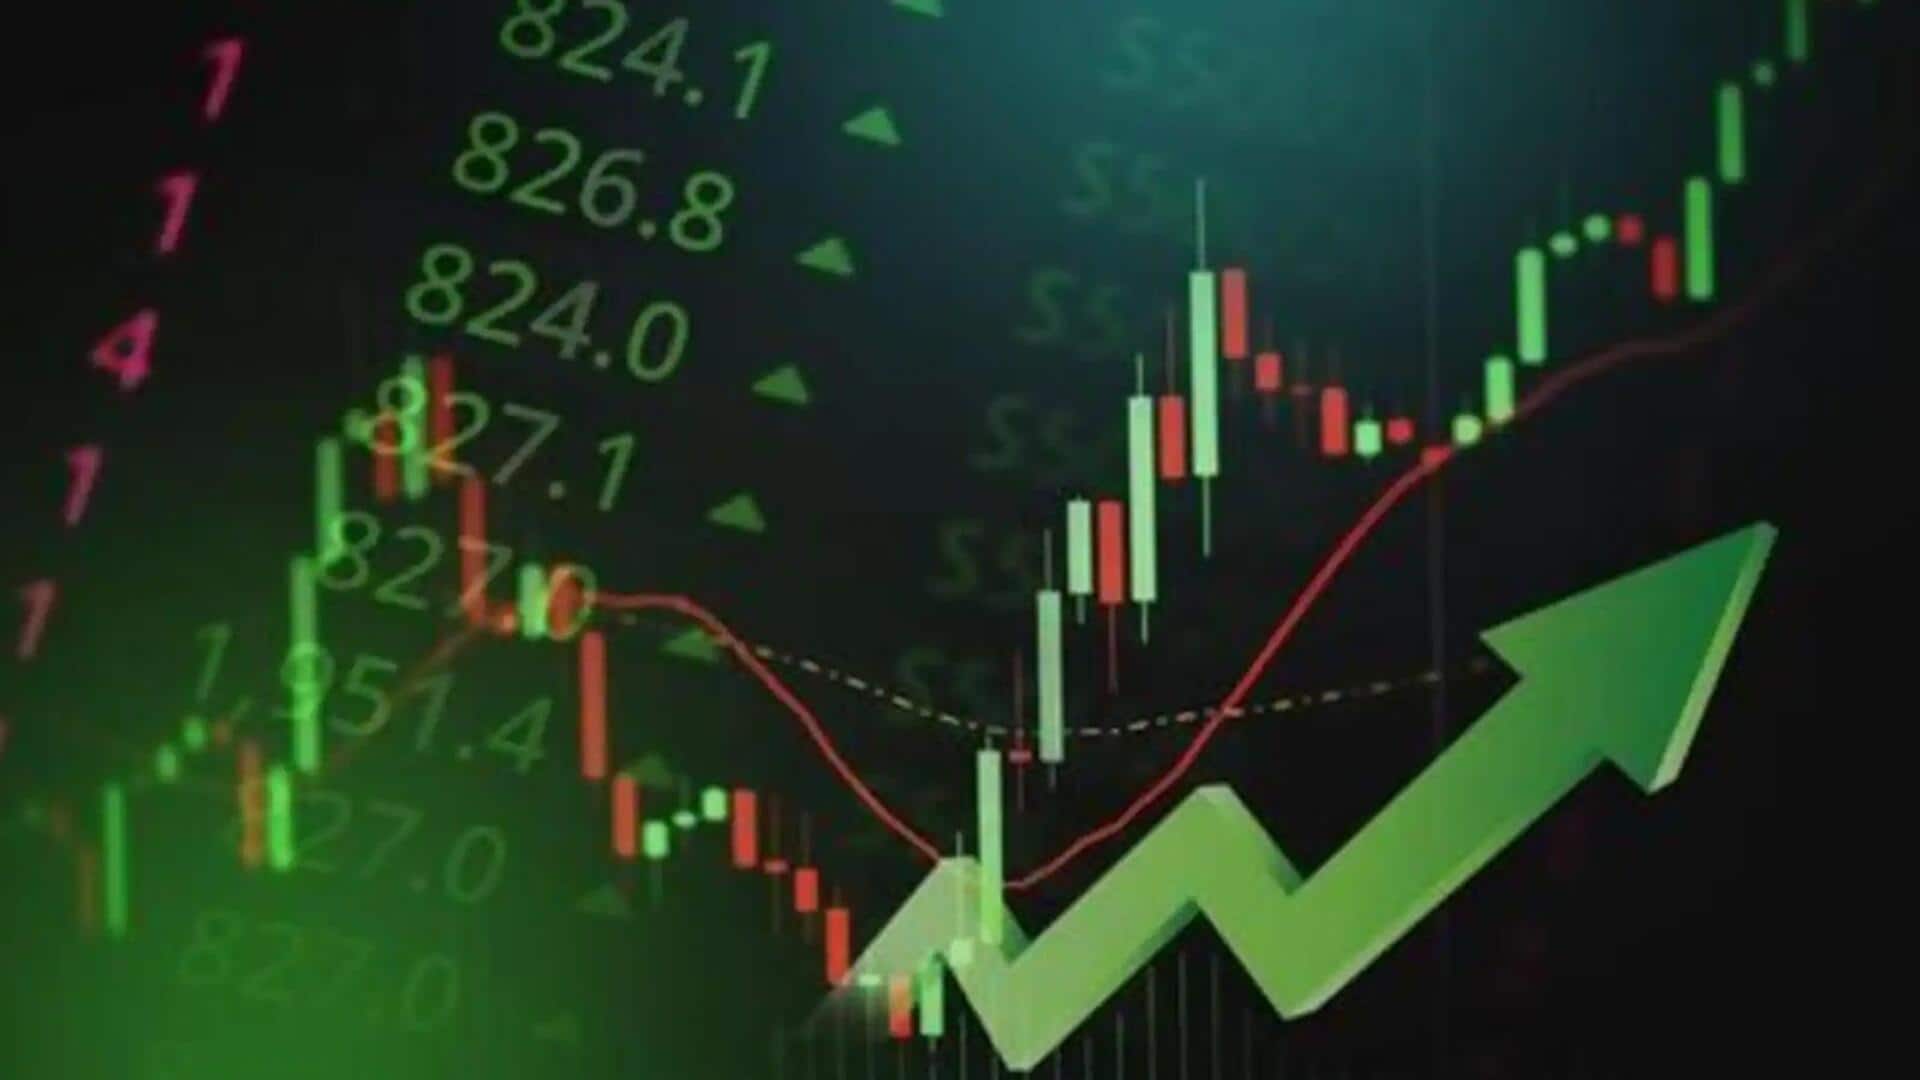 शेयर बाजार: 141 अंक ऊपर चढ़ा सेंसेक्स, निफ्टी में भी तेजी